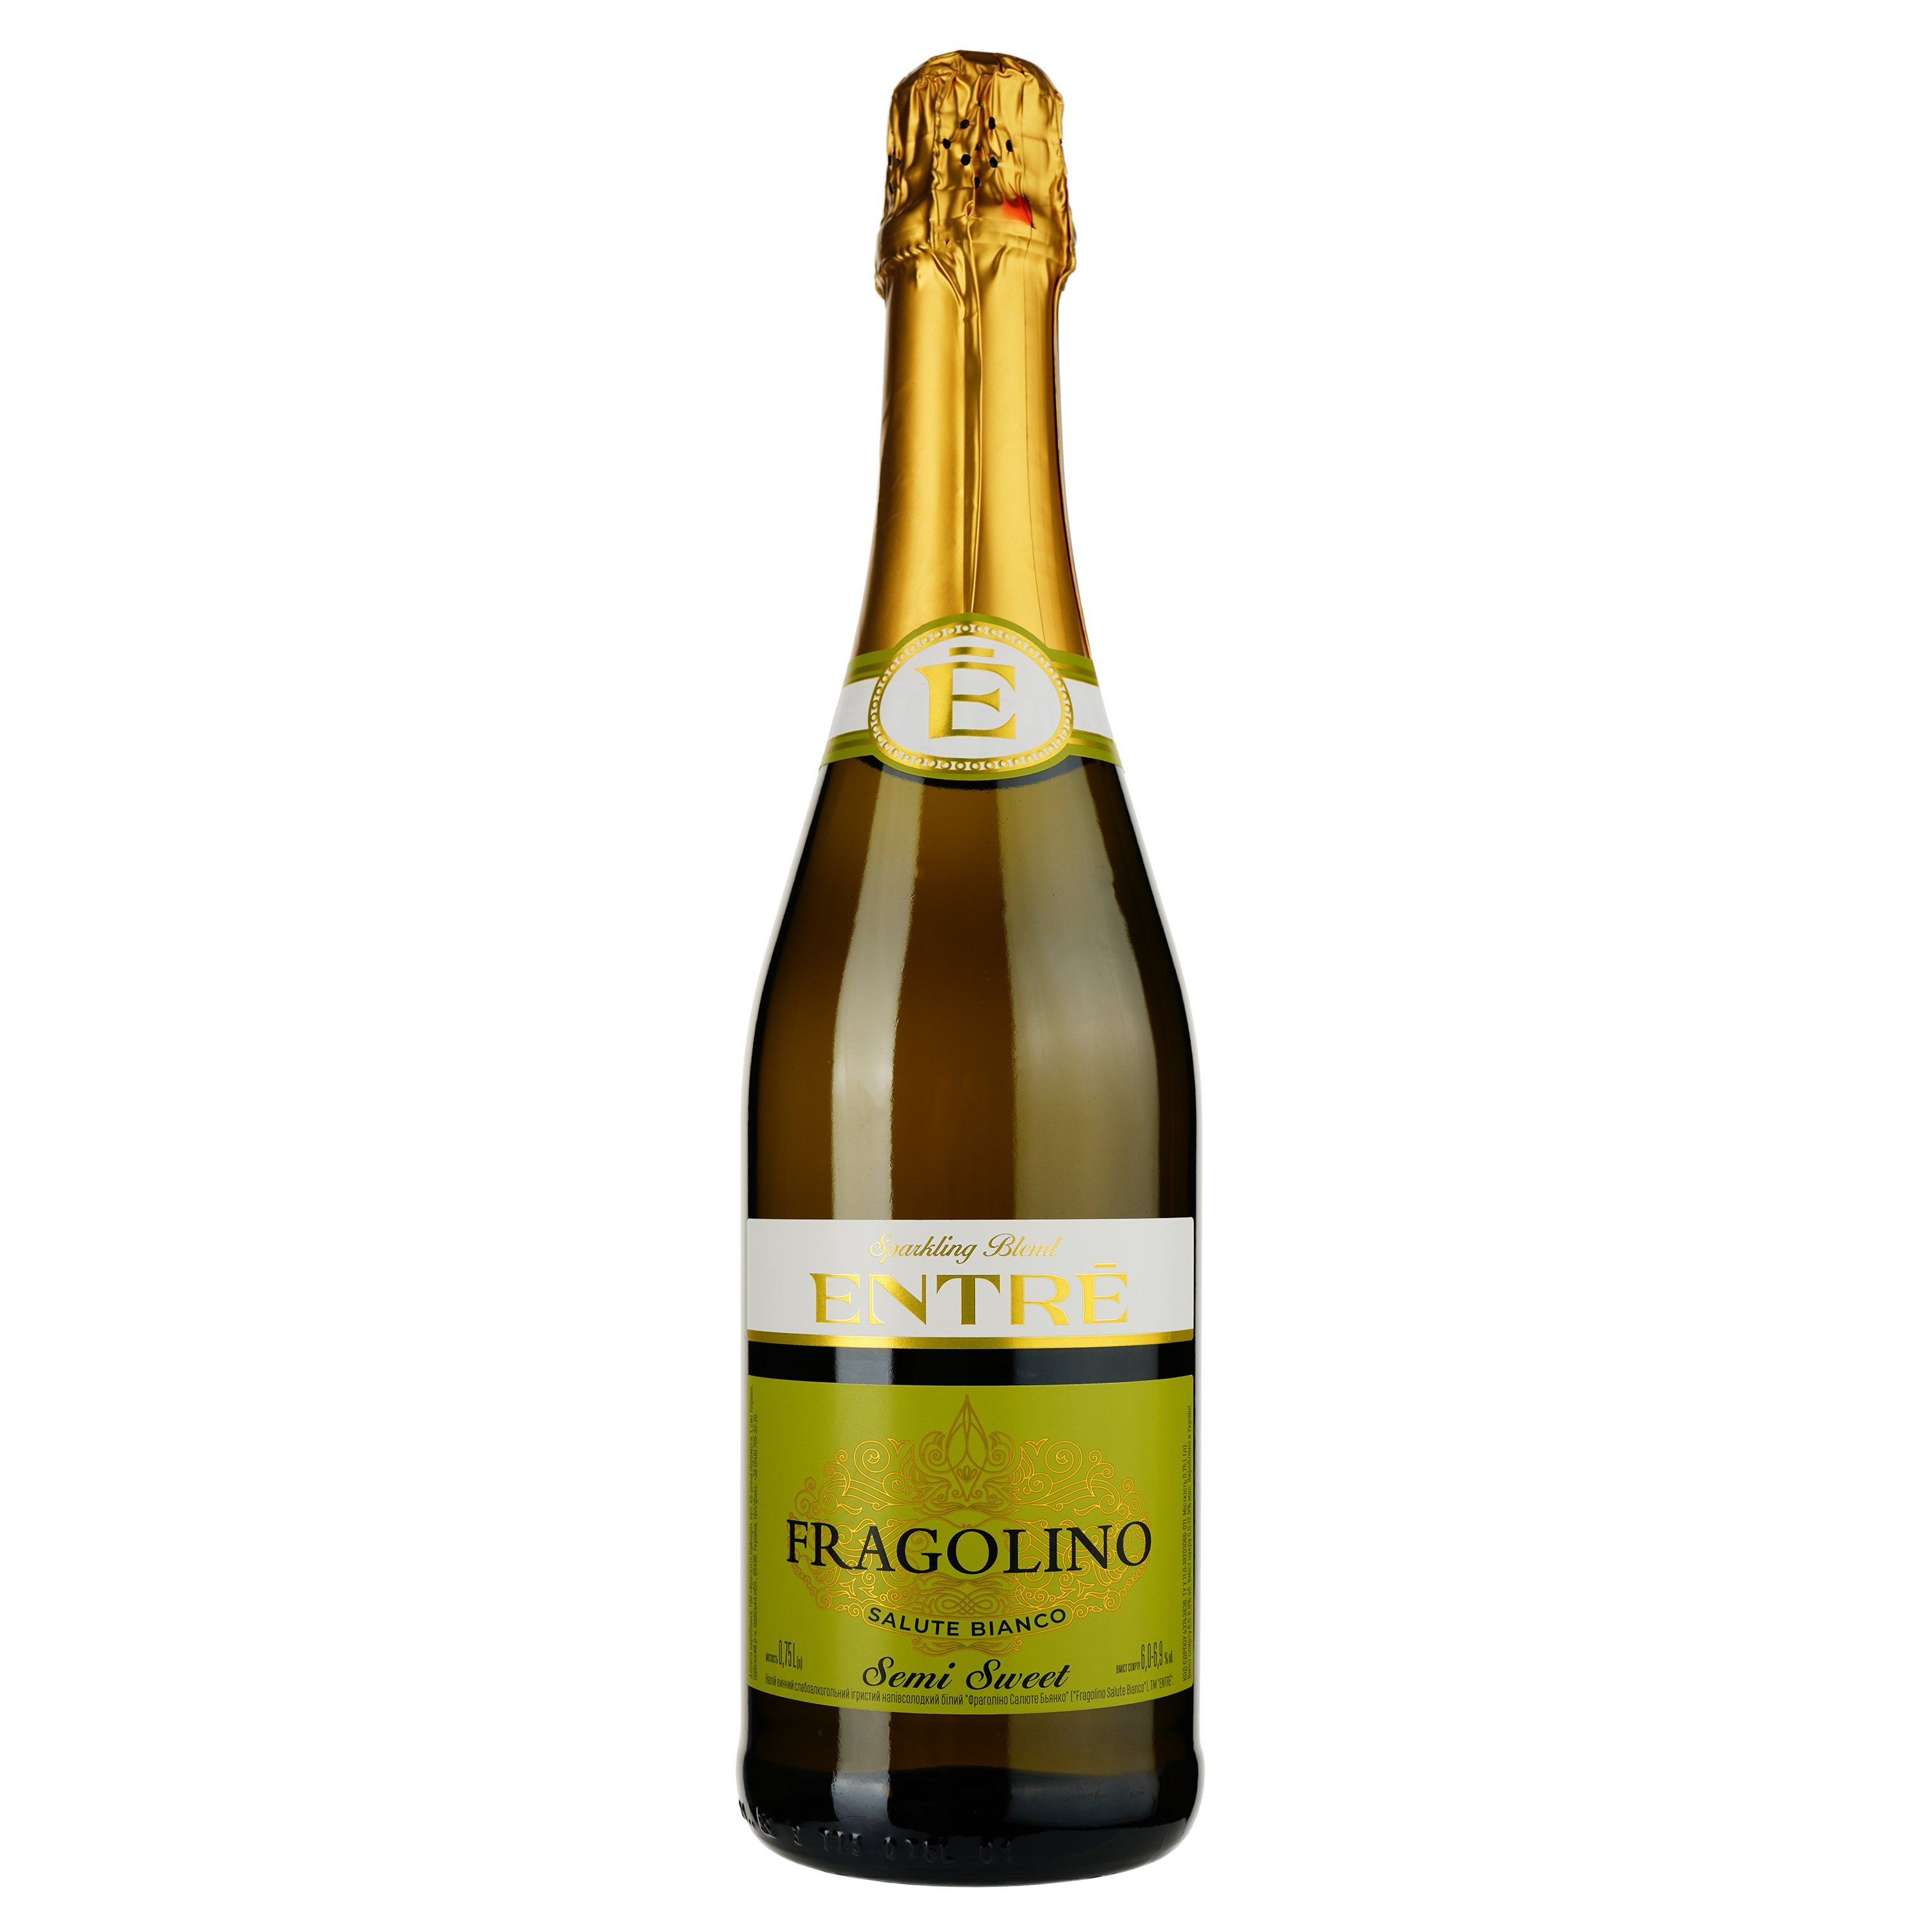 Напиток винный Entre Fragolino Salute Bianco, белый, полусладкий, 6-6,9%, 0,75 л - фото 1